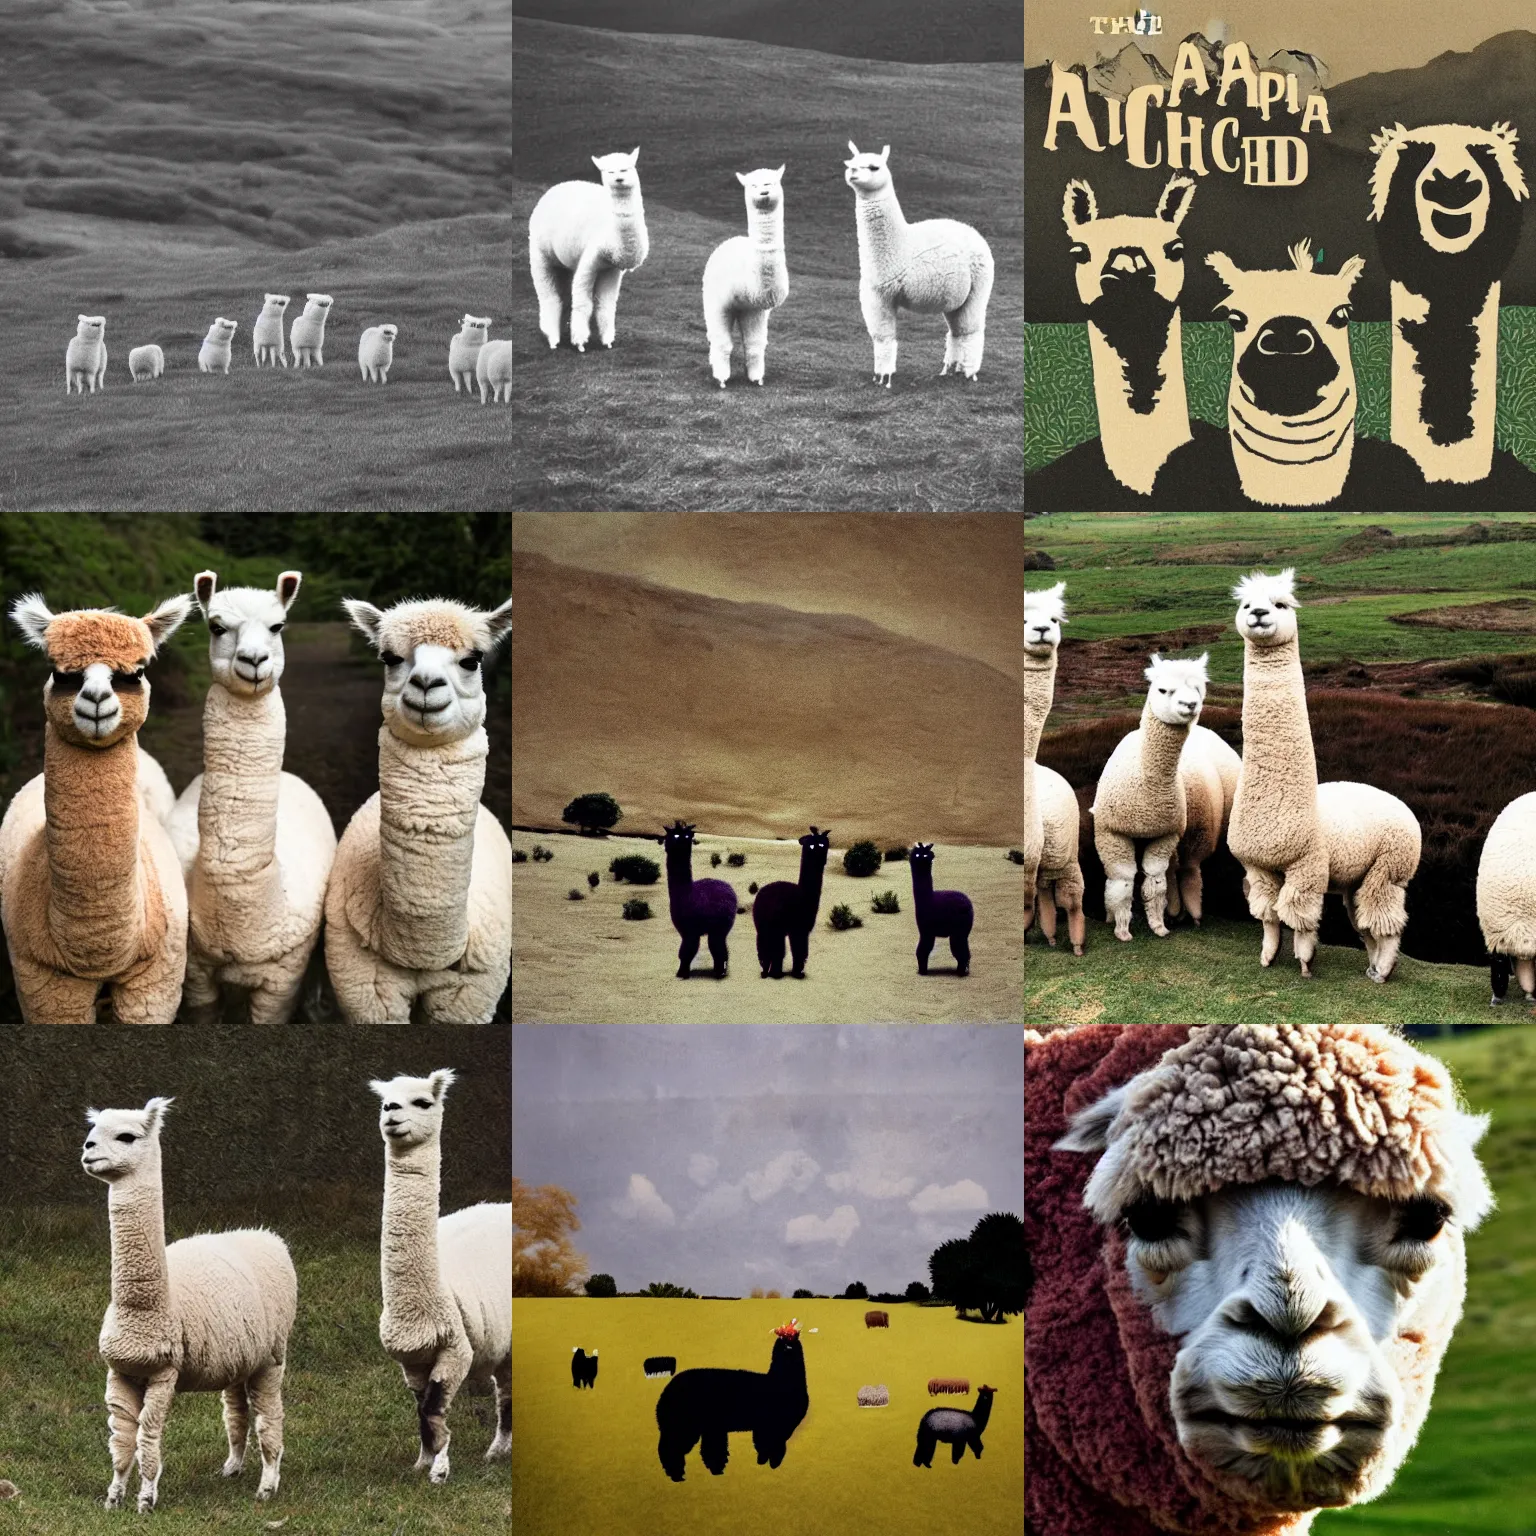 Prompt: the alpacas, radiohead album